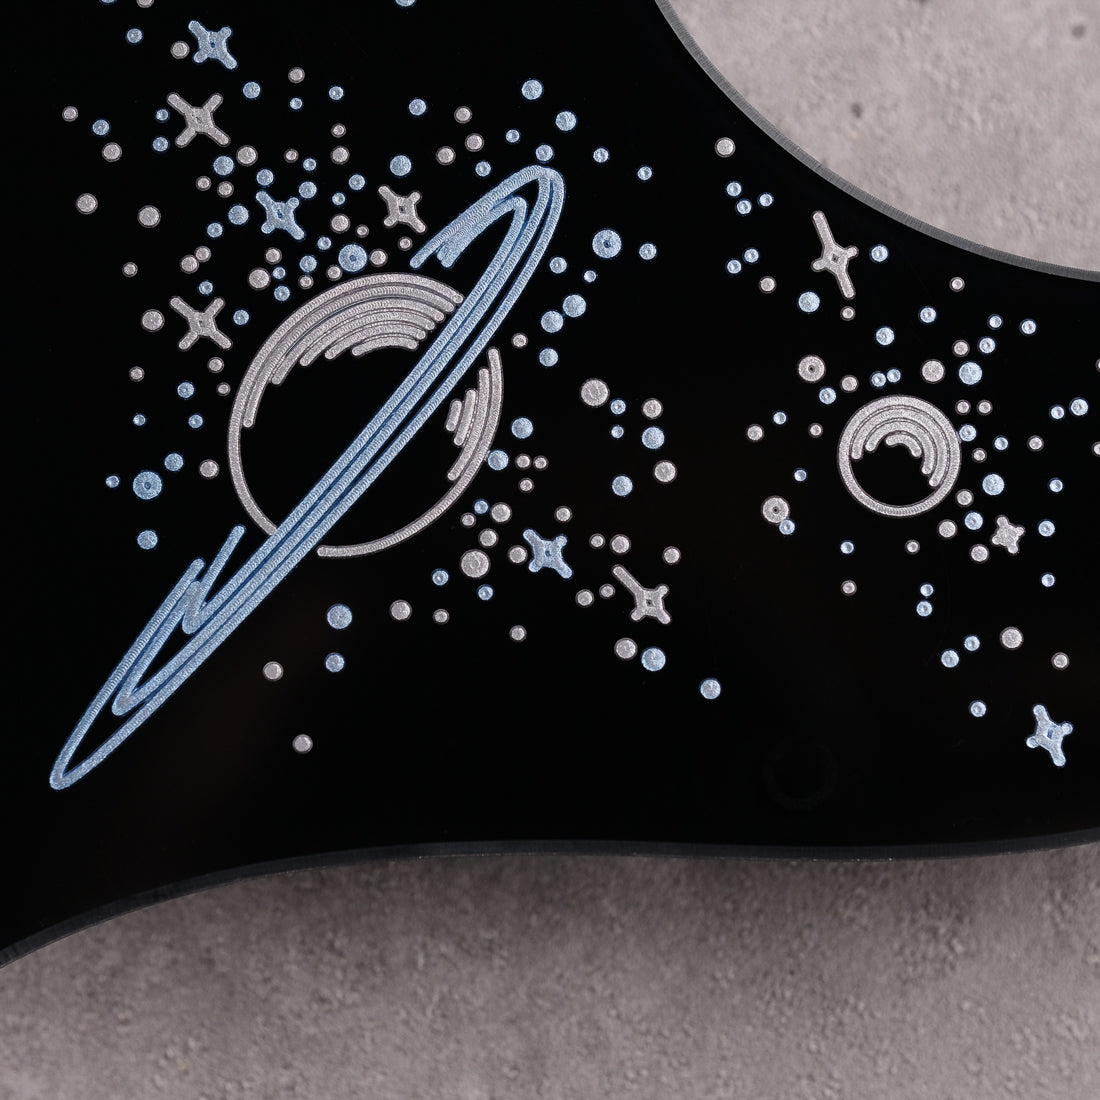 Space Oddity - Telecaster Pickguard - in Black